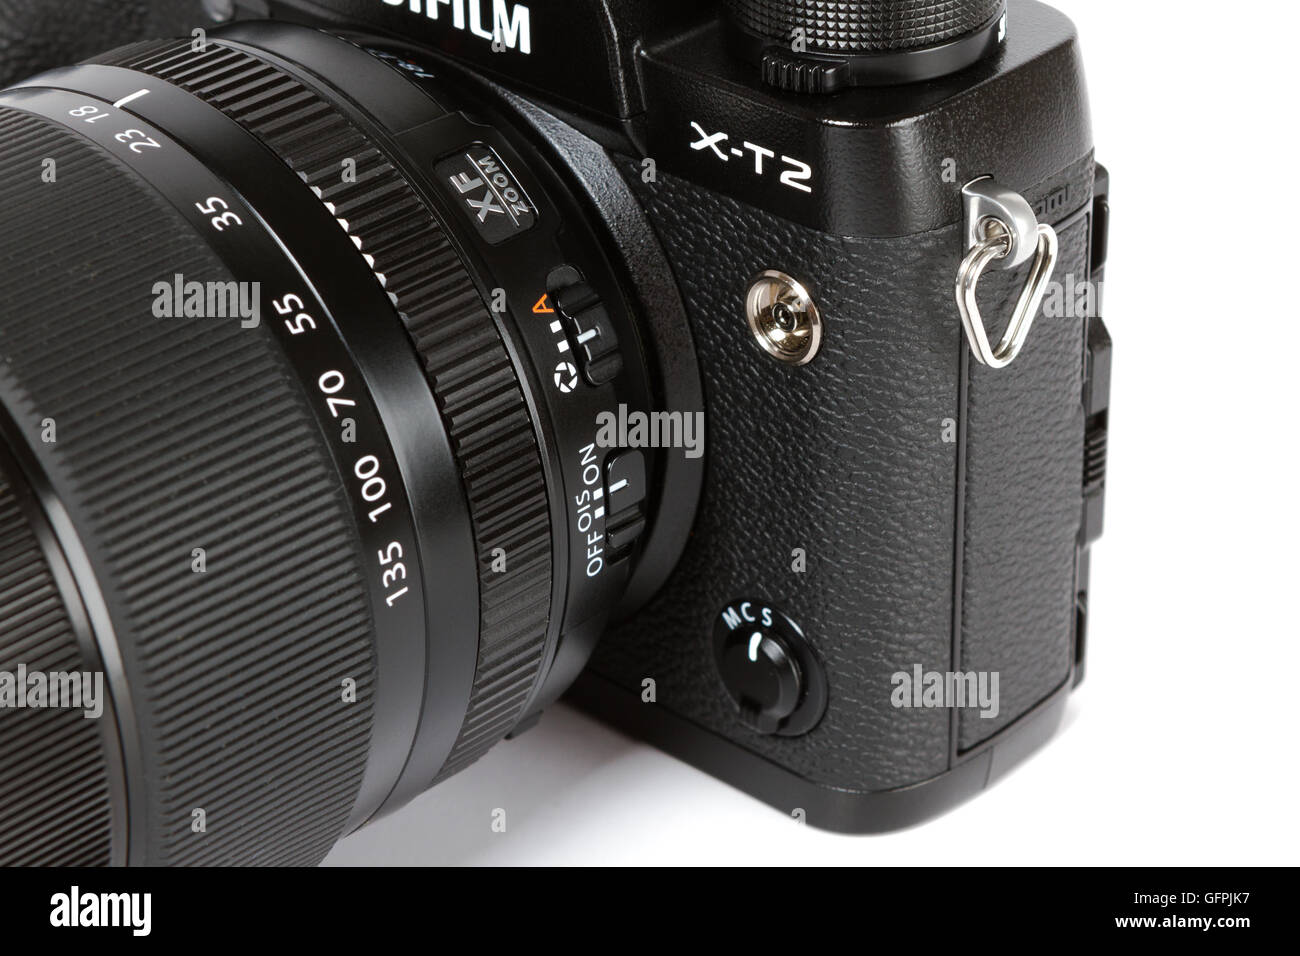 Détails sur FUJIFILM X-T2, 24 mégapixels, caméra vidéo 4K mirrorless fon fond blanc Banque D'Images